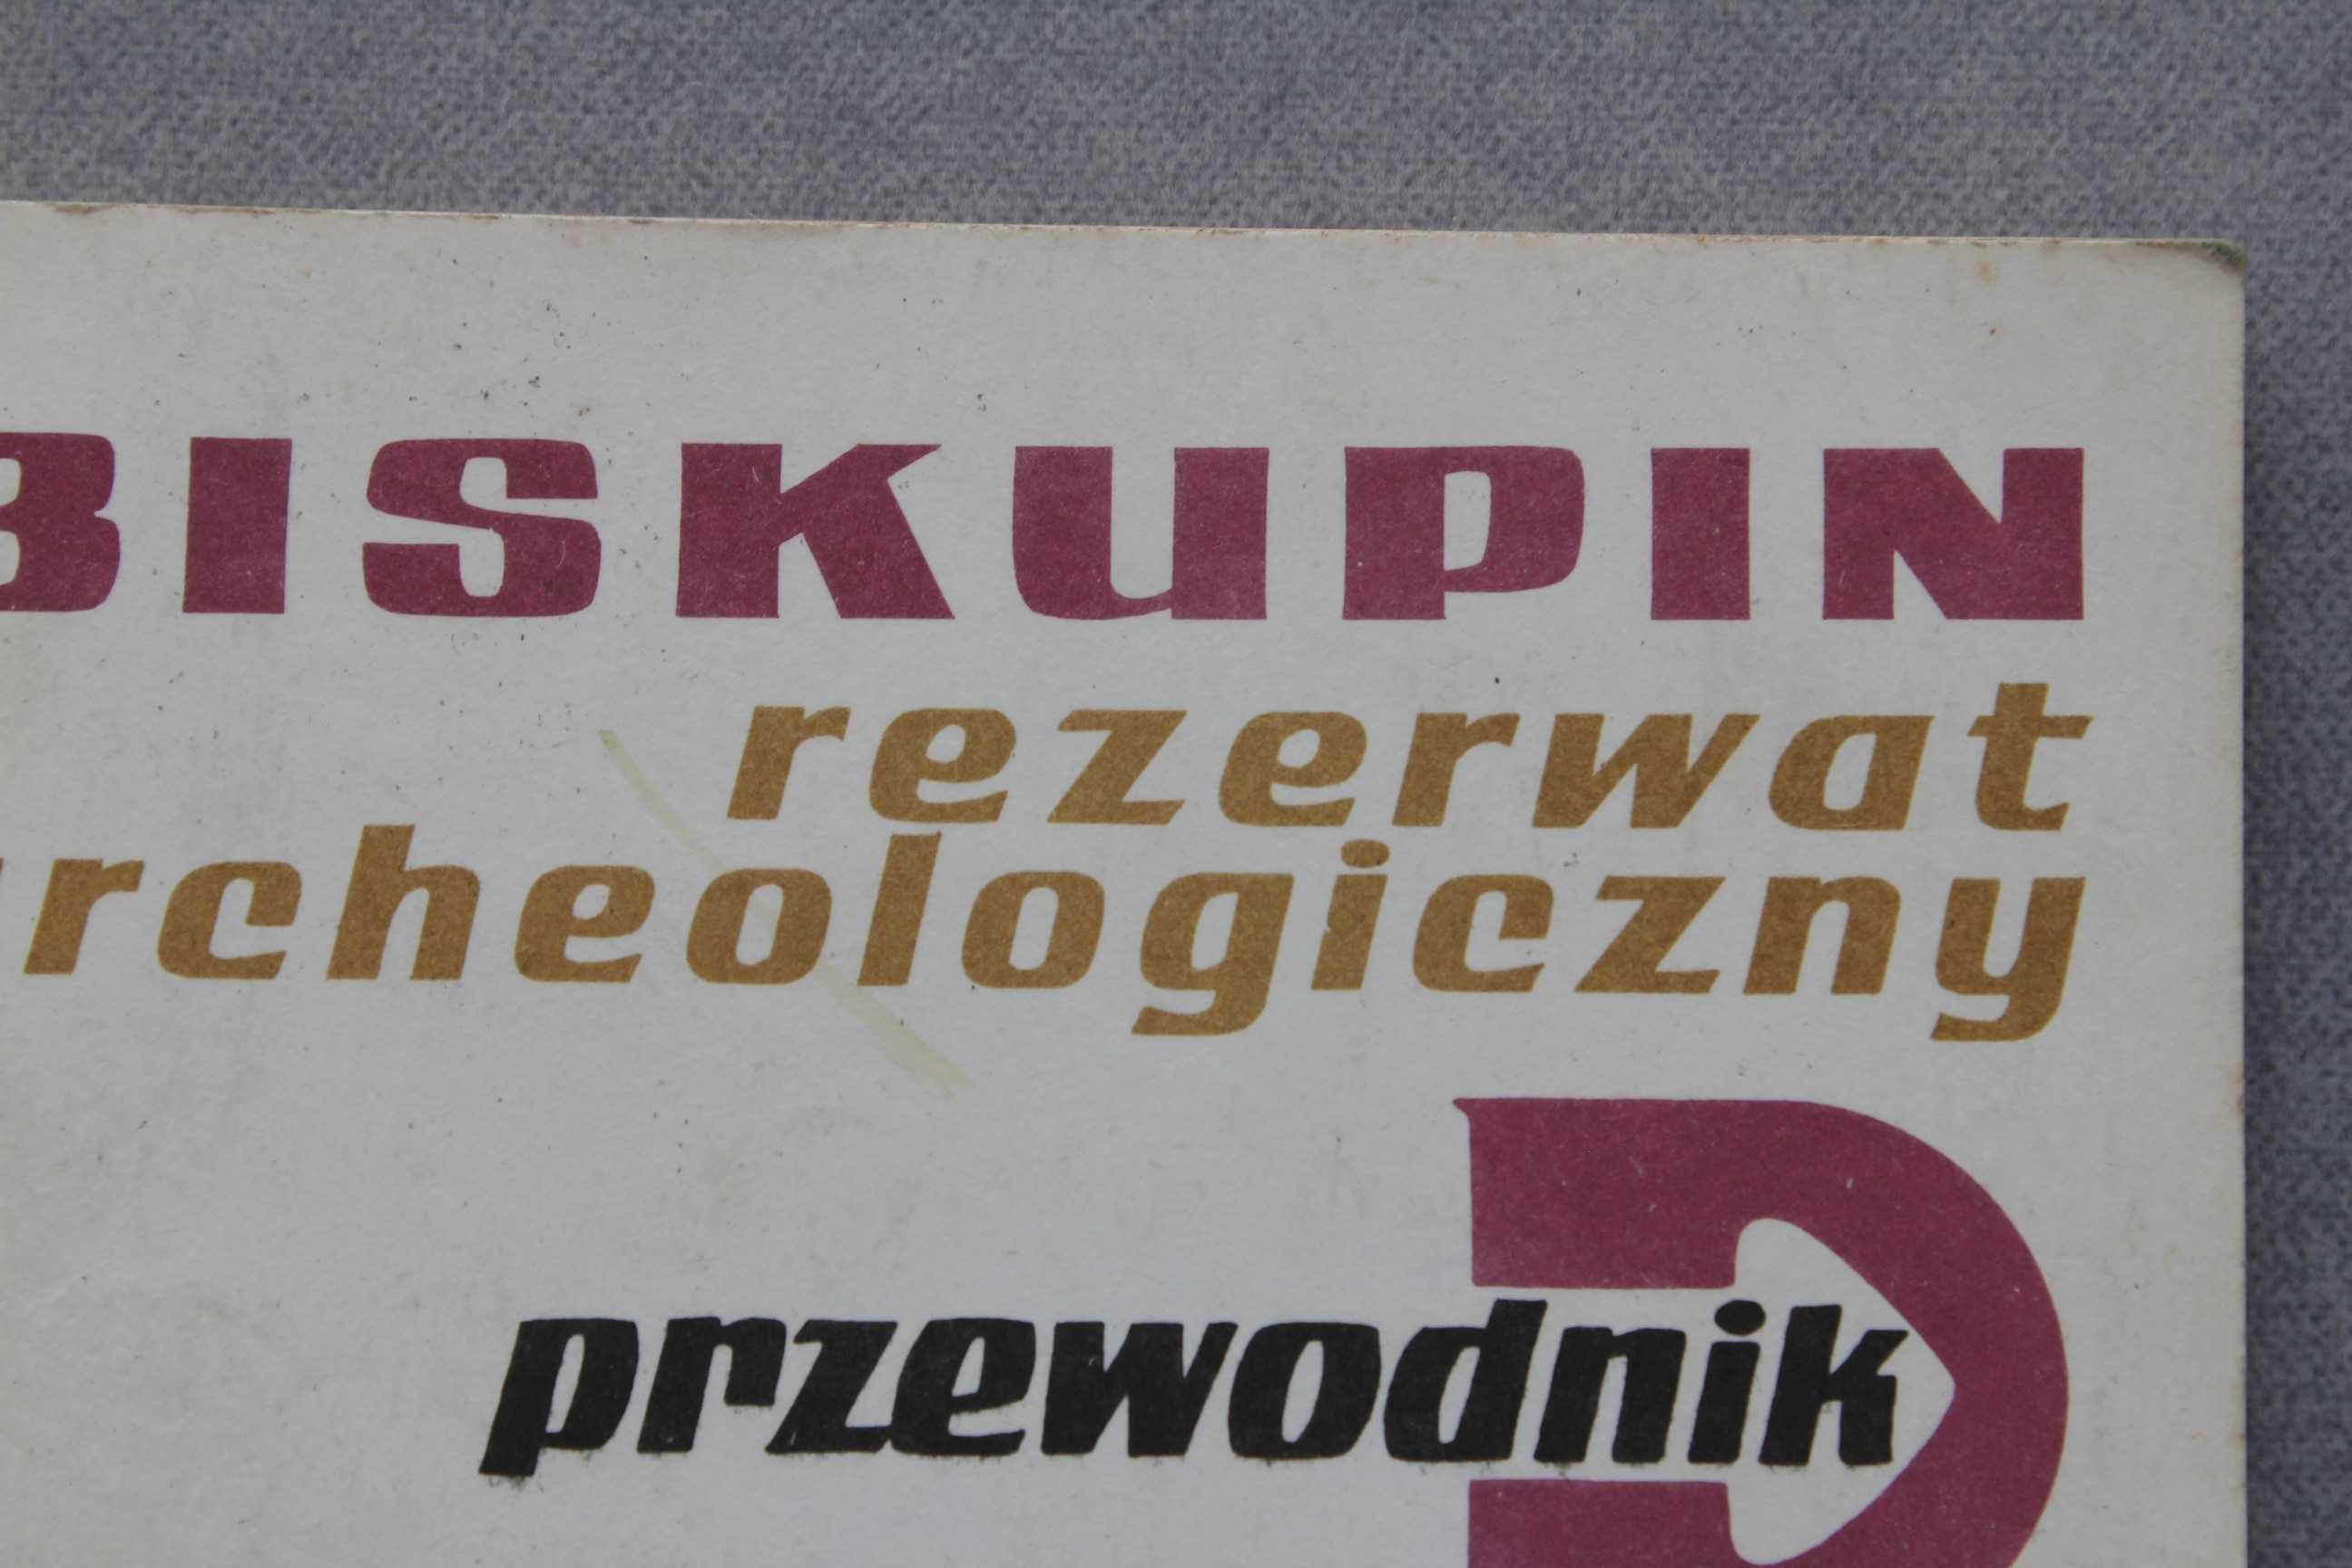 Biskupin Rezerwat archeologiczny W.  Zajączkowski Wyd. Poznańskie 1987